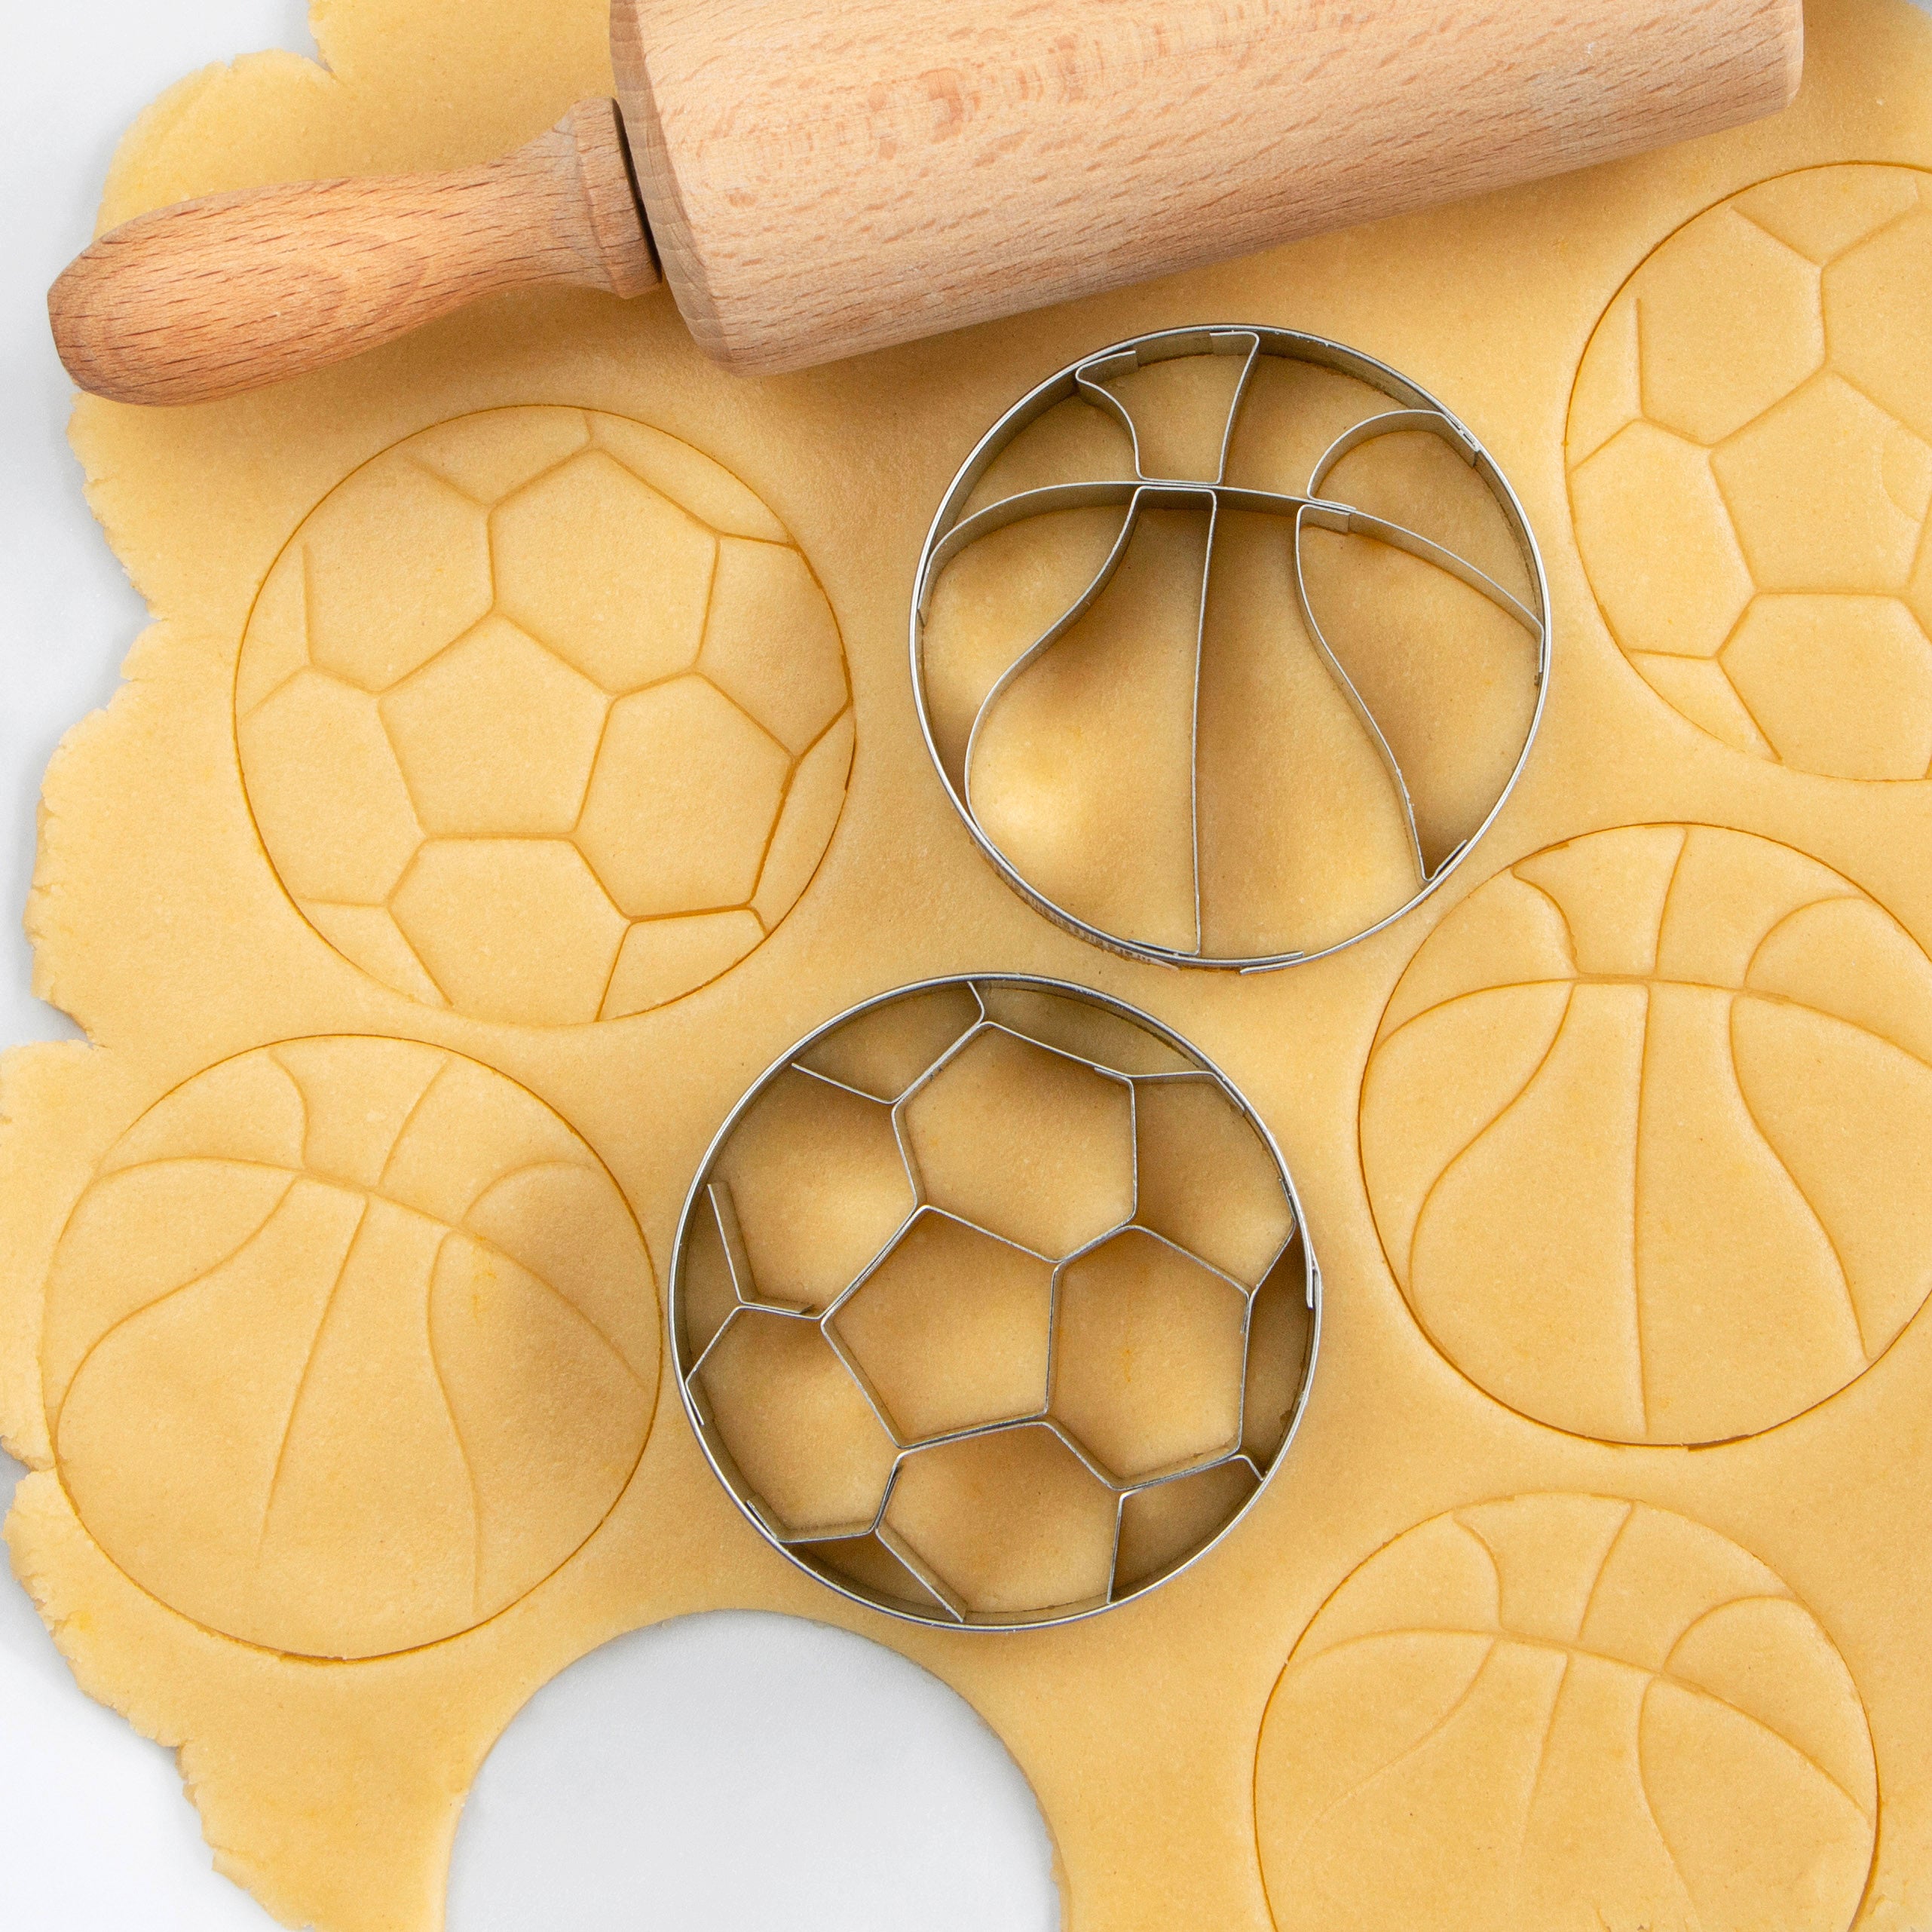 STÄDTER Fruits cookie cutter – Alko Kitchenware